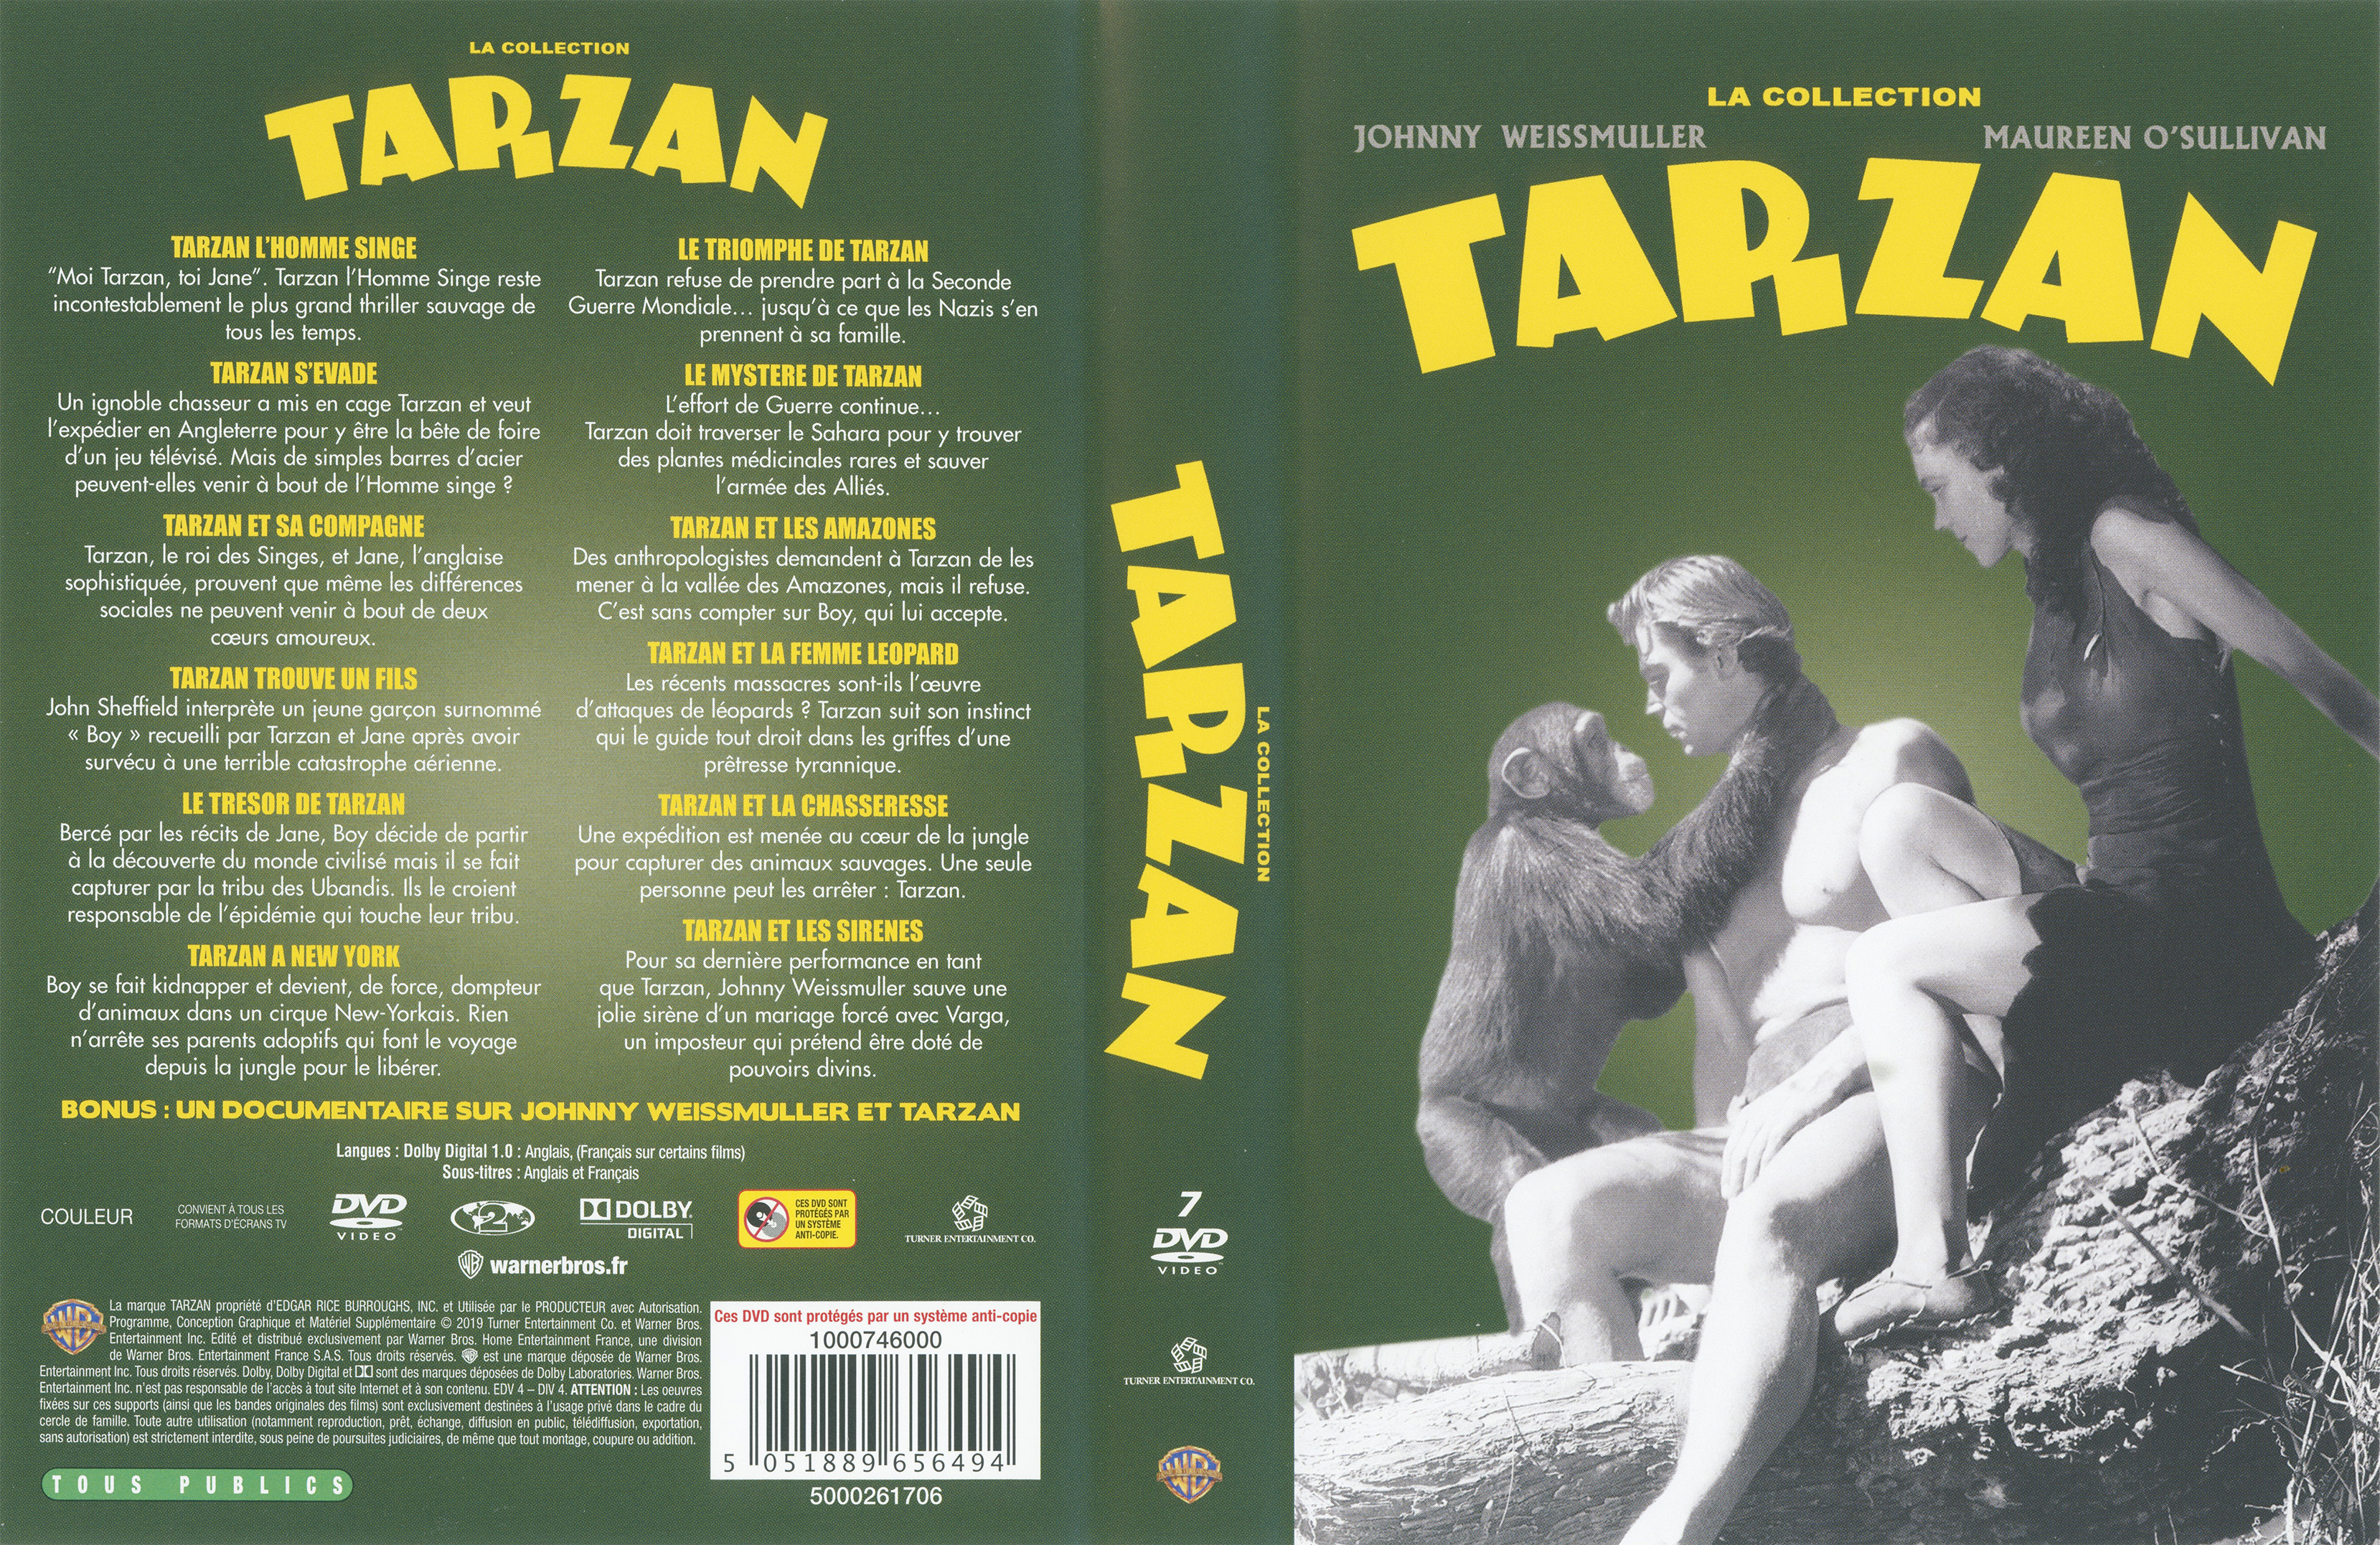 Jaquette DVD Tarzan la collection